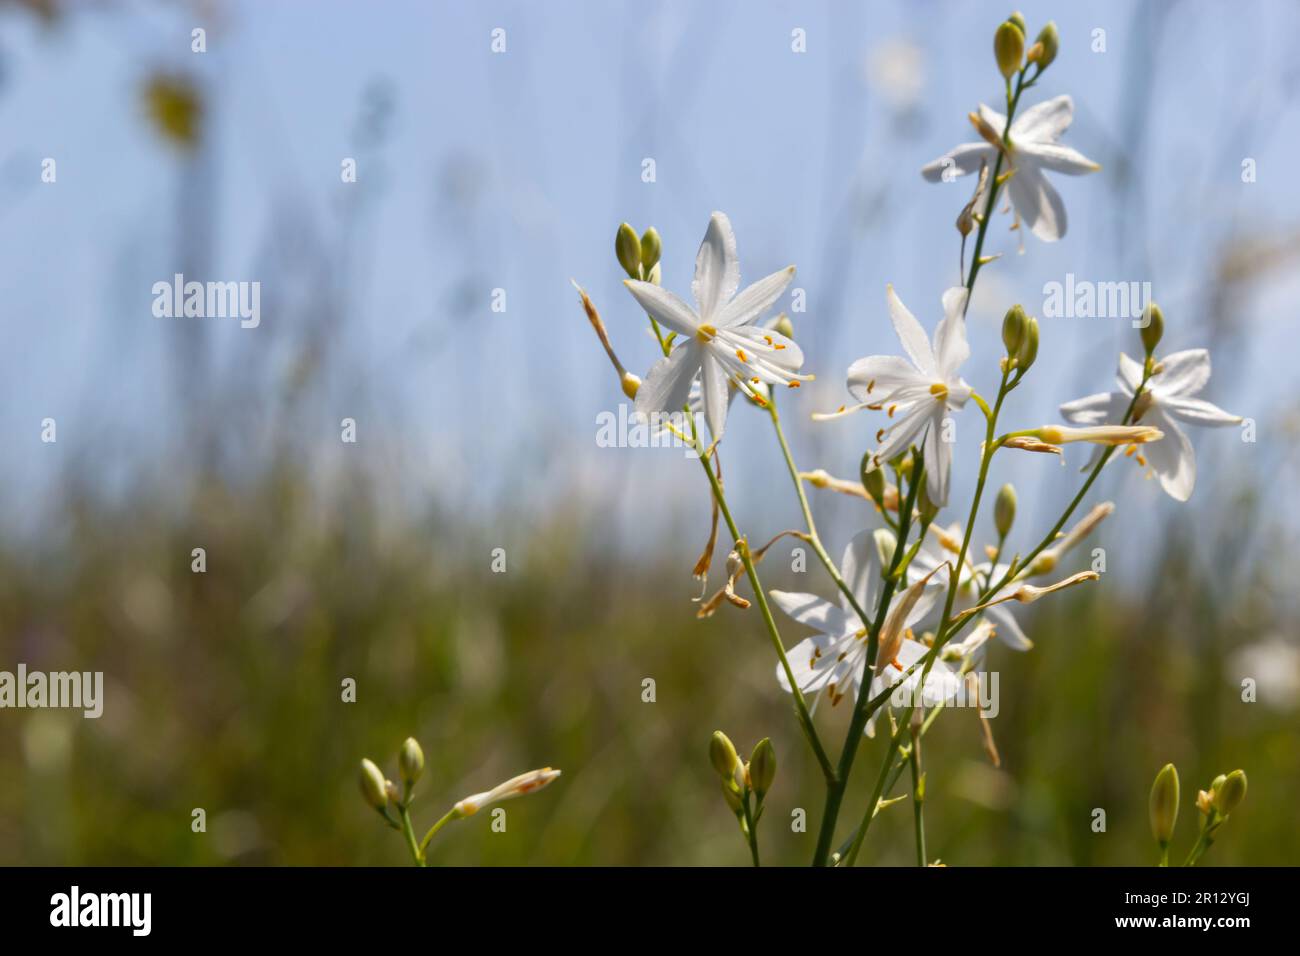 Fleurs blanches et jaunes fragiles d'Anthericum ramosum, en forme d'étoile, poussant dans une prairie dans la nature, fond vert flou, couleurs chaudes, un brillant Banque D'Images